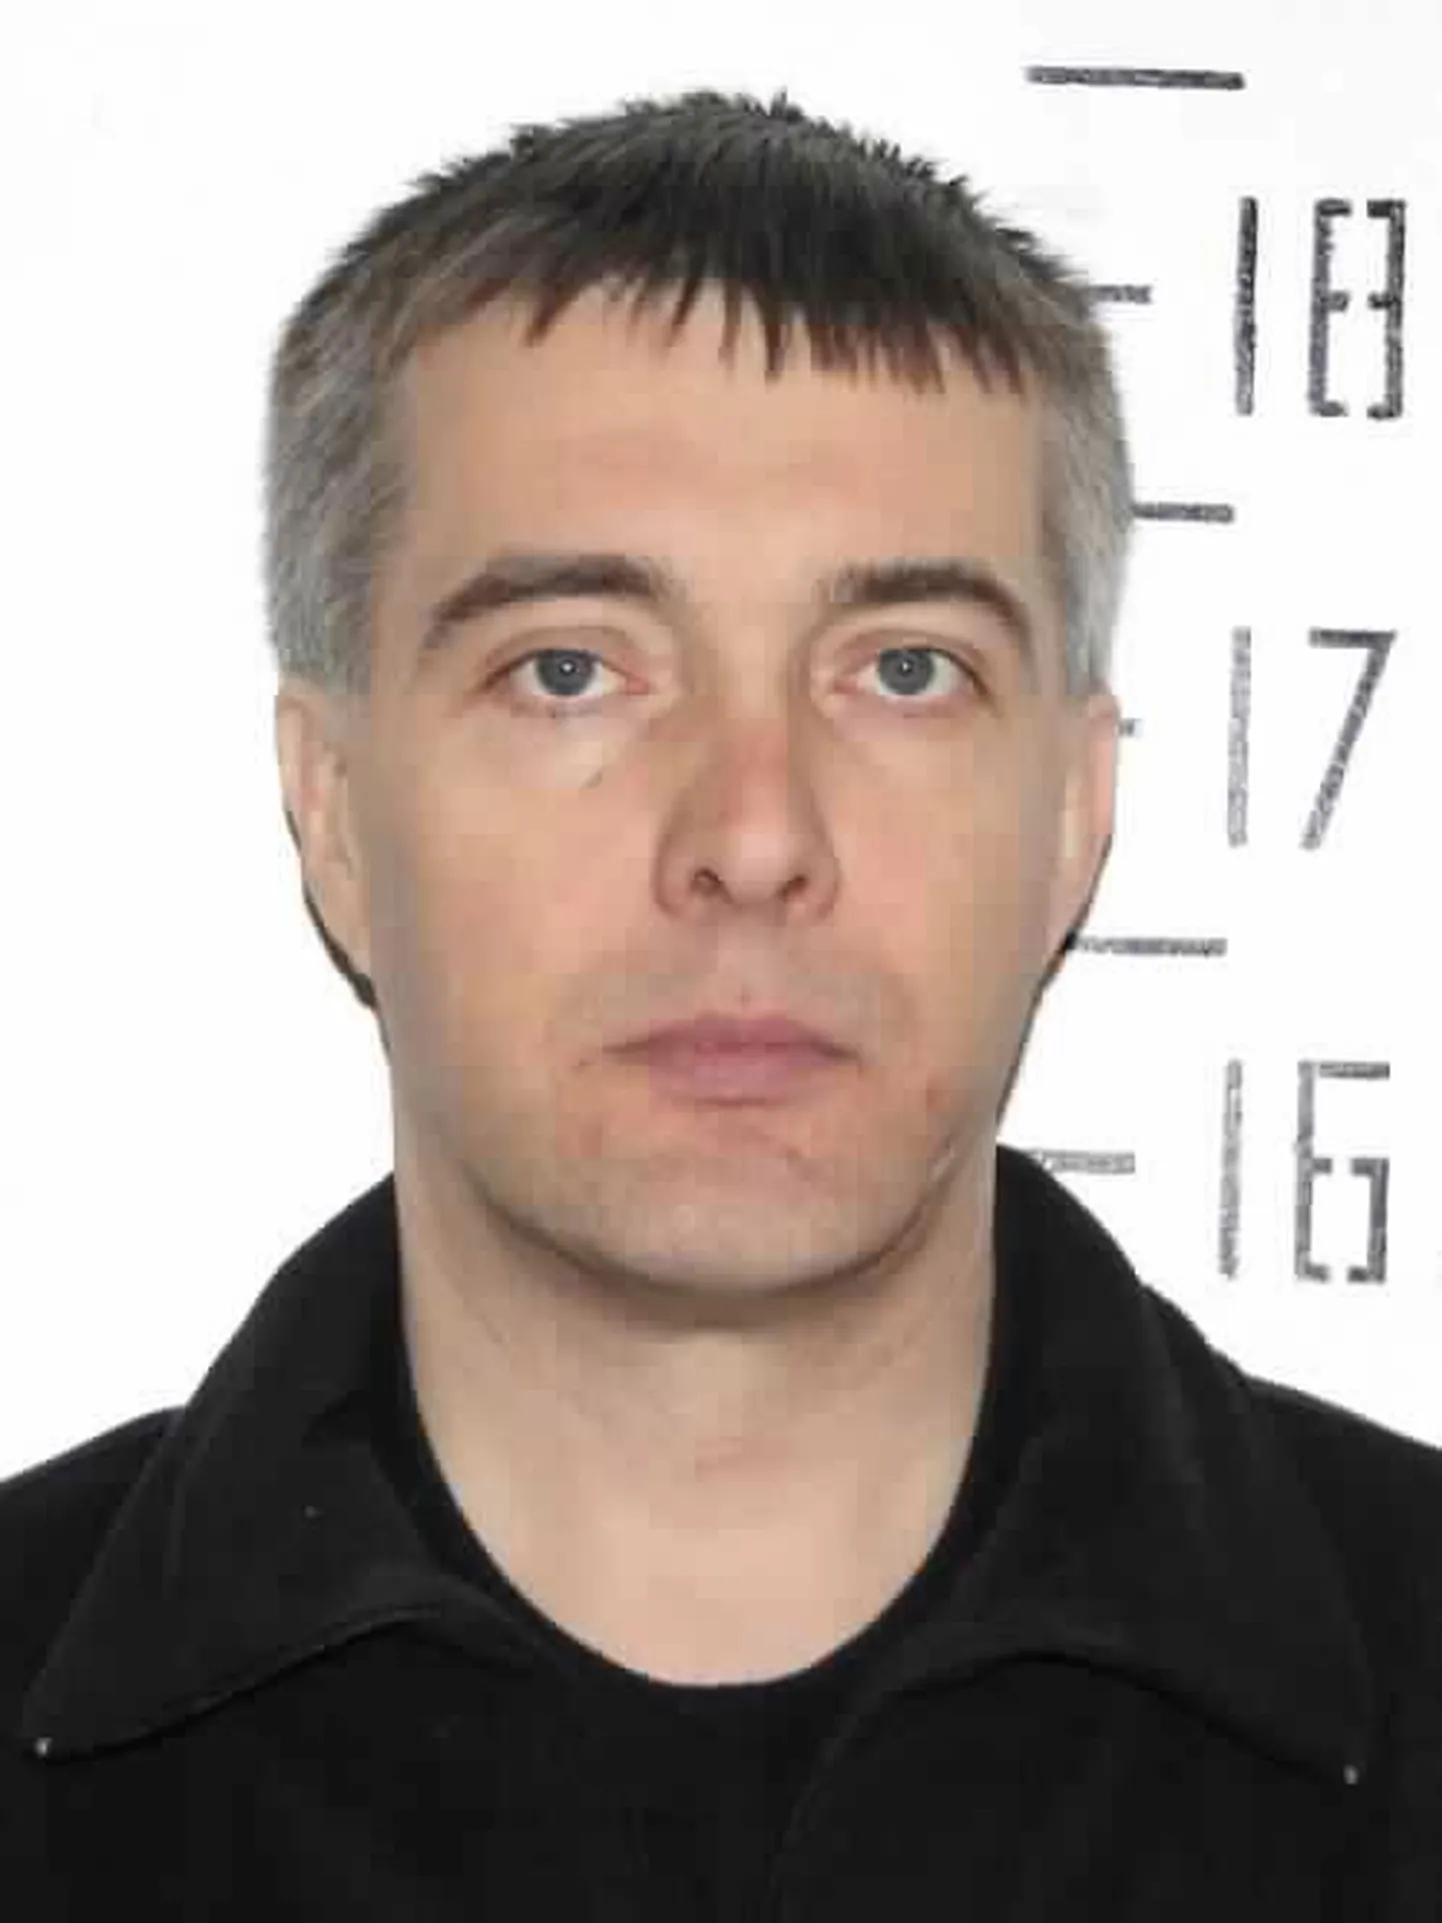 Полиция разыскивала 44-летнего Игоря Карпа с помощью СМИ.